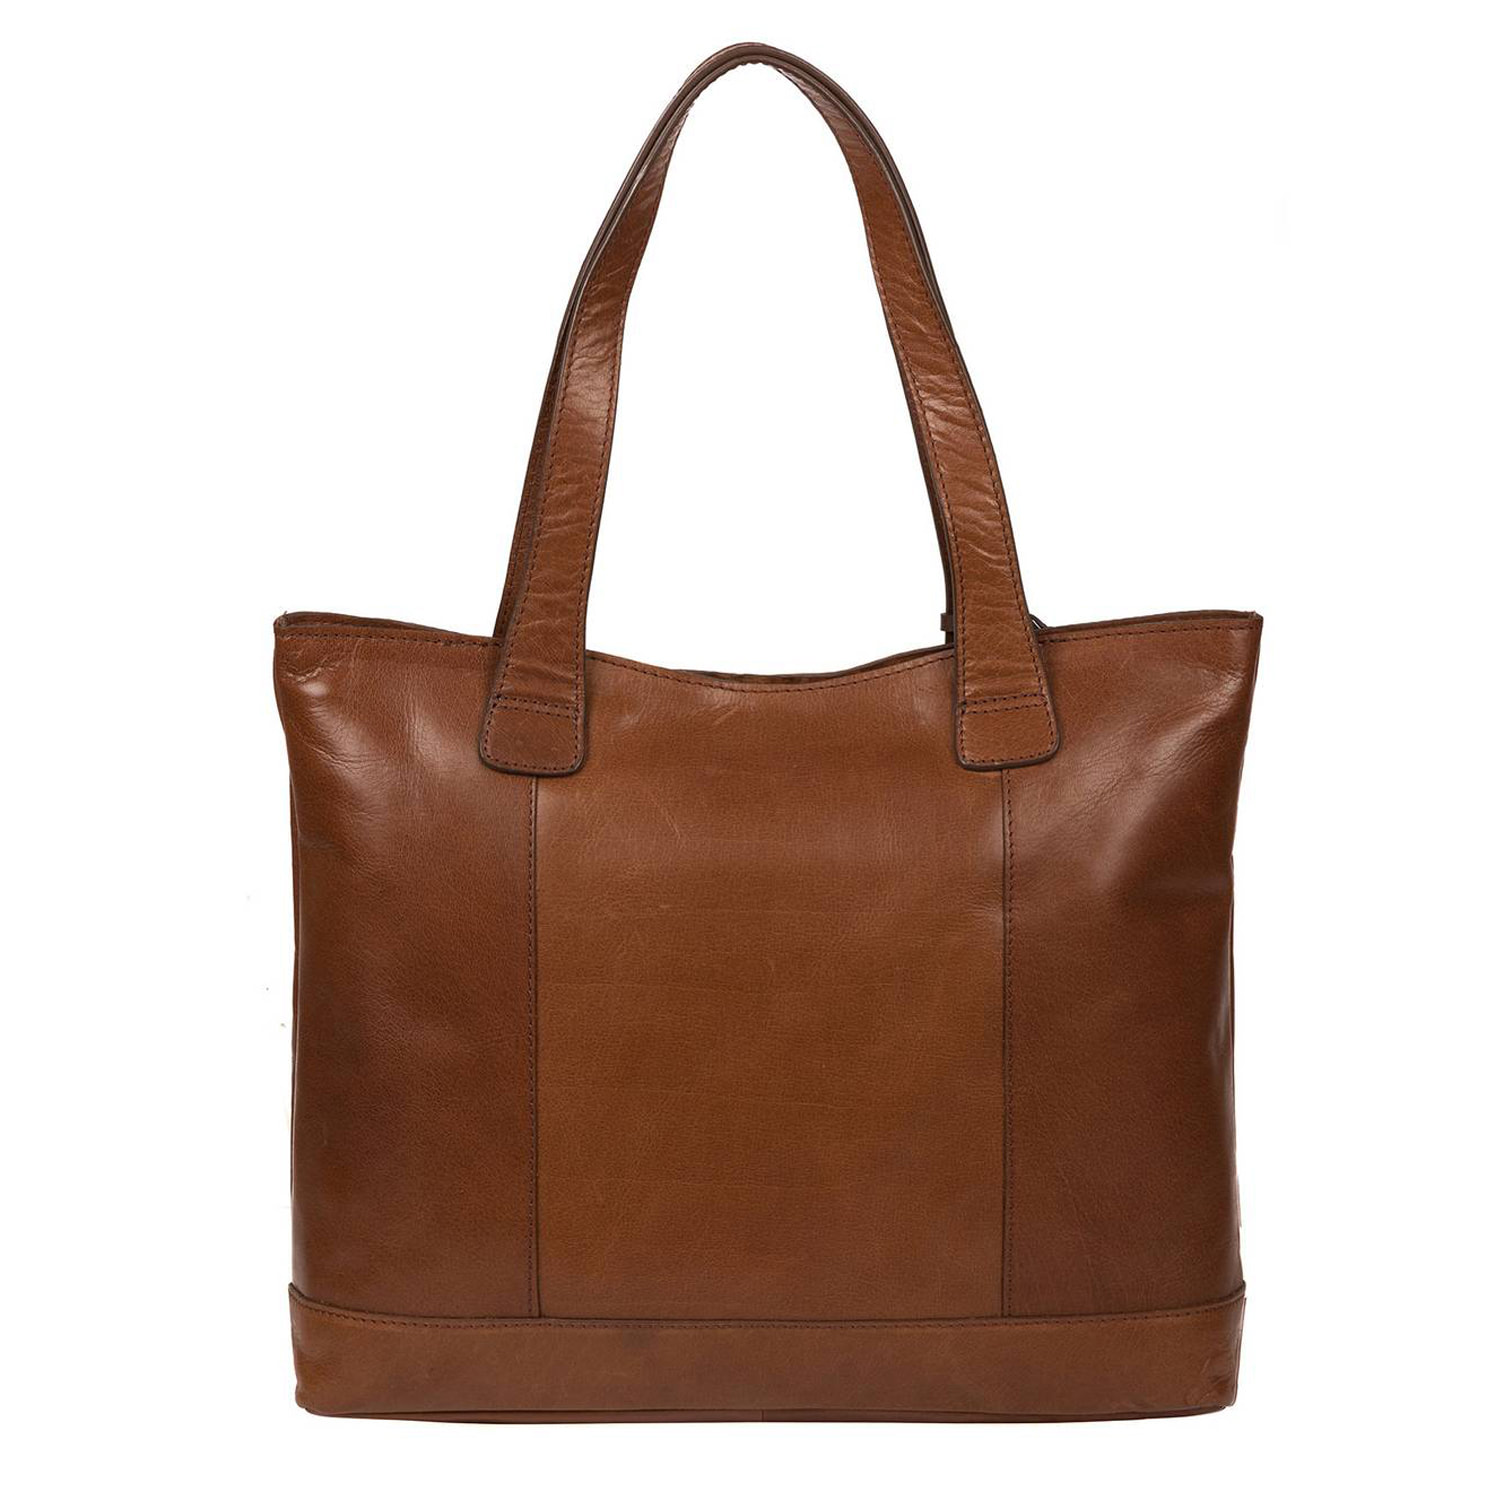 Large Brown Leather Handbag, Tote Bag, Shoulder Bag